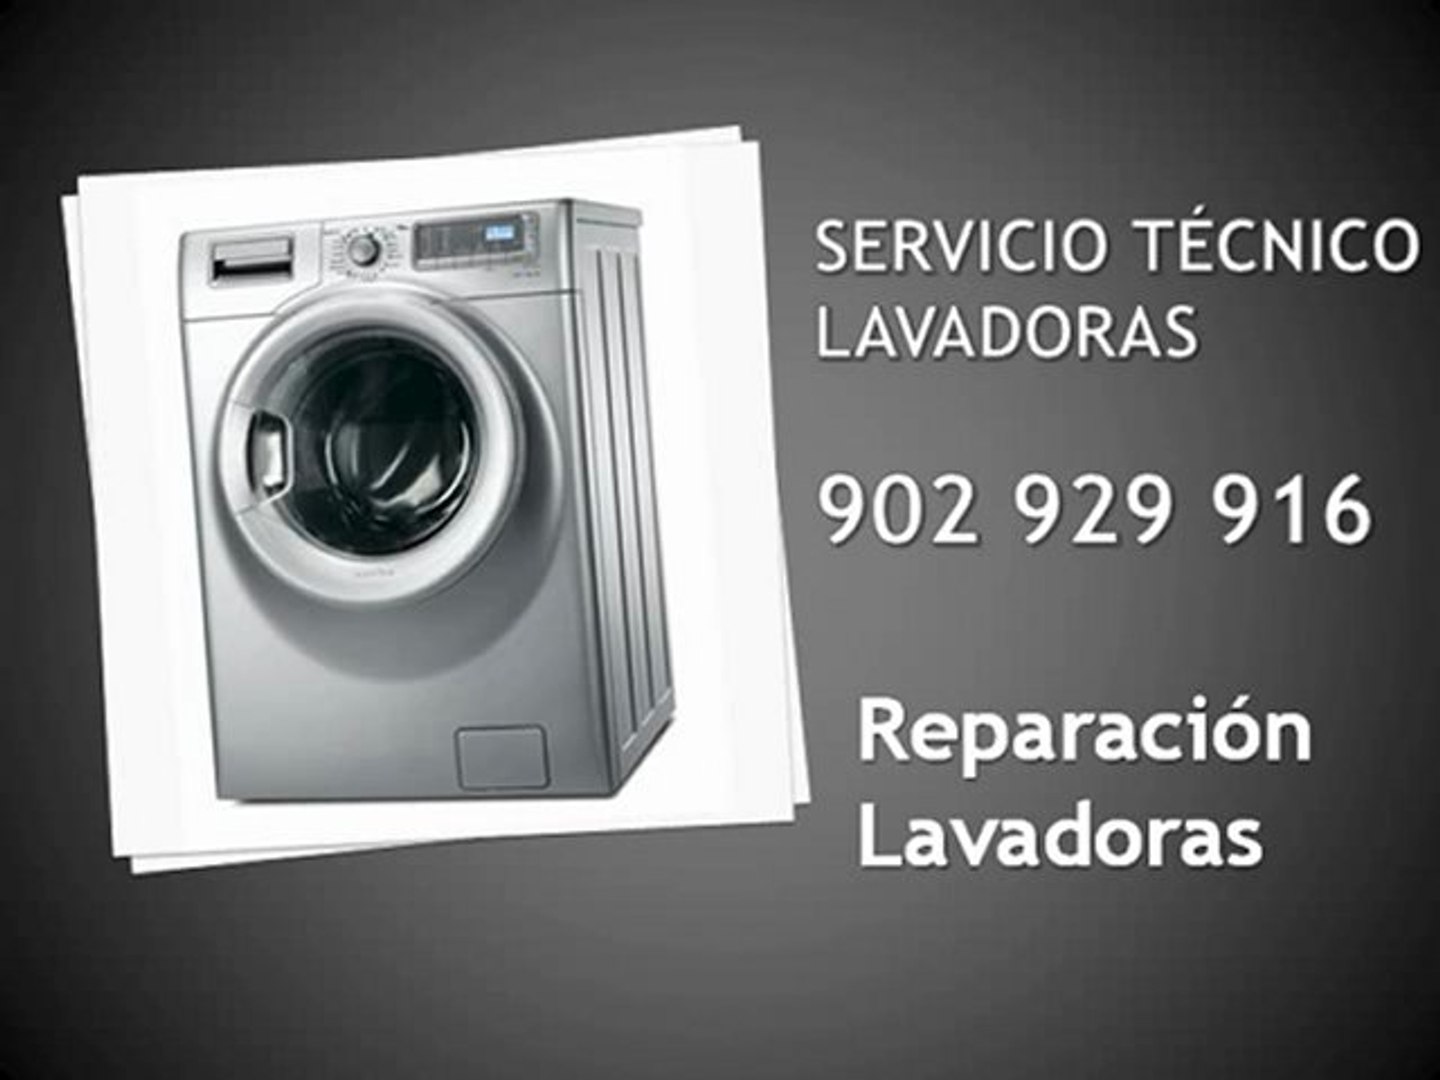 Reparación lavadoras Hoover - Servicio técnico Hoover Alcorcón - Teléfono  902 808 189 - Vídeo Dailymotion